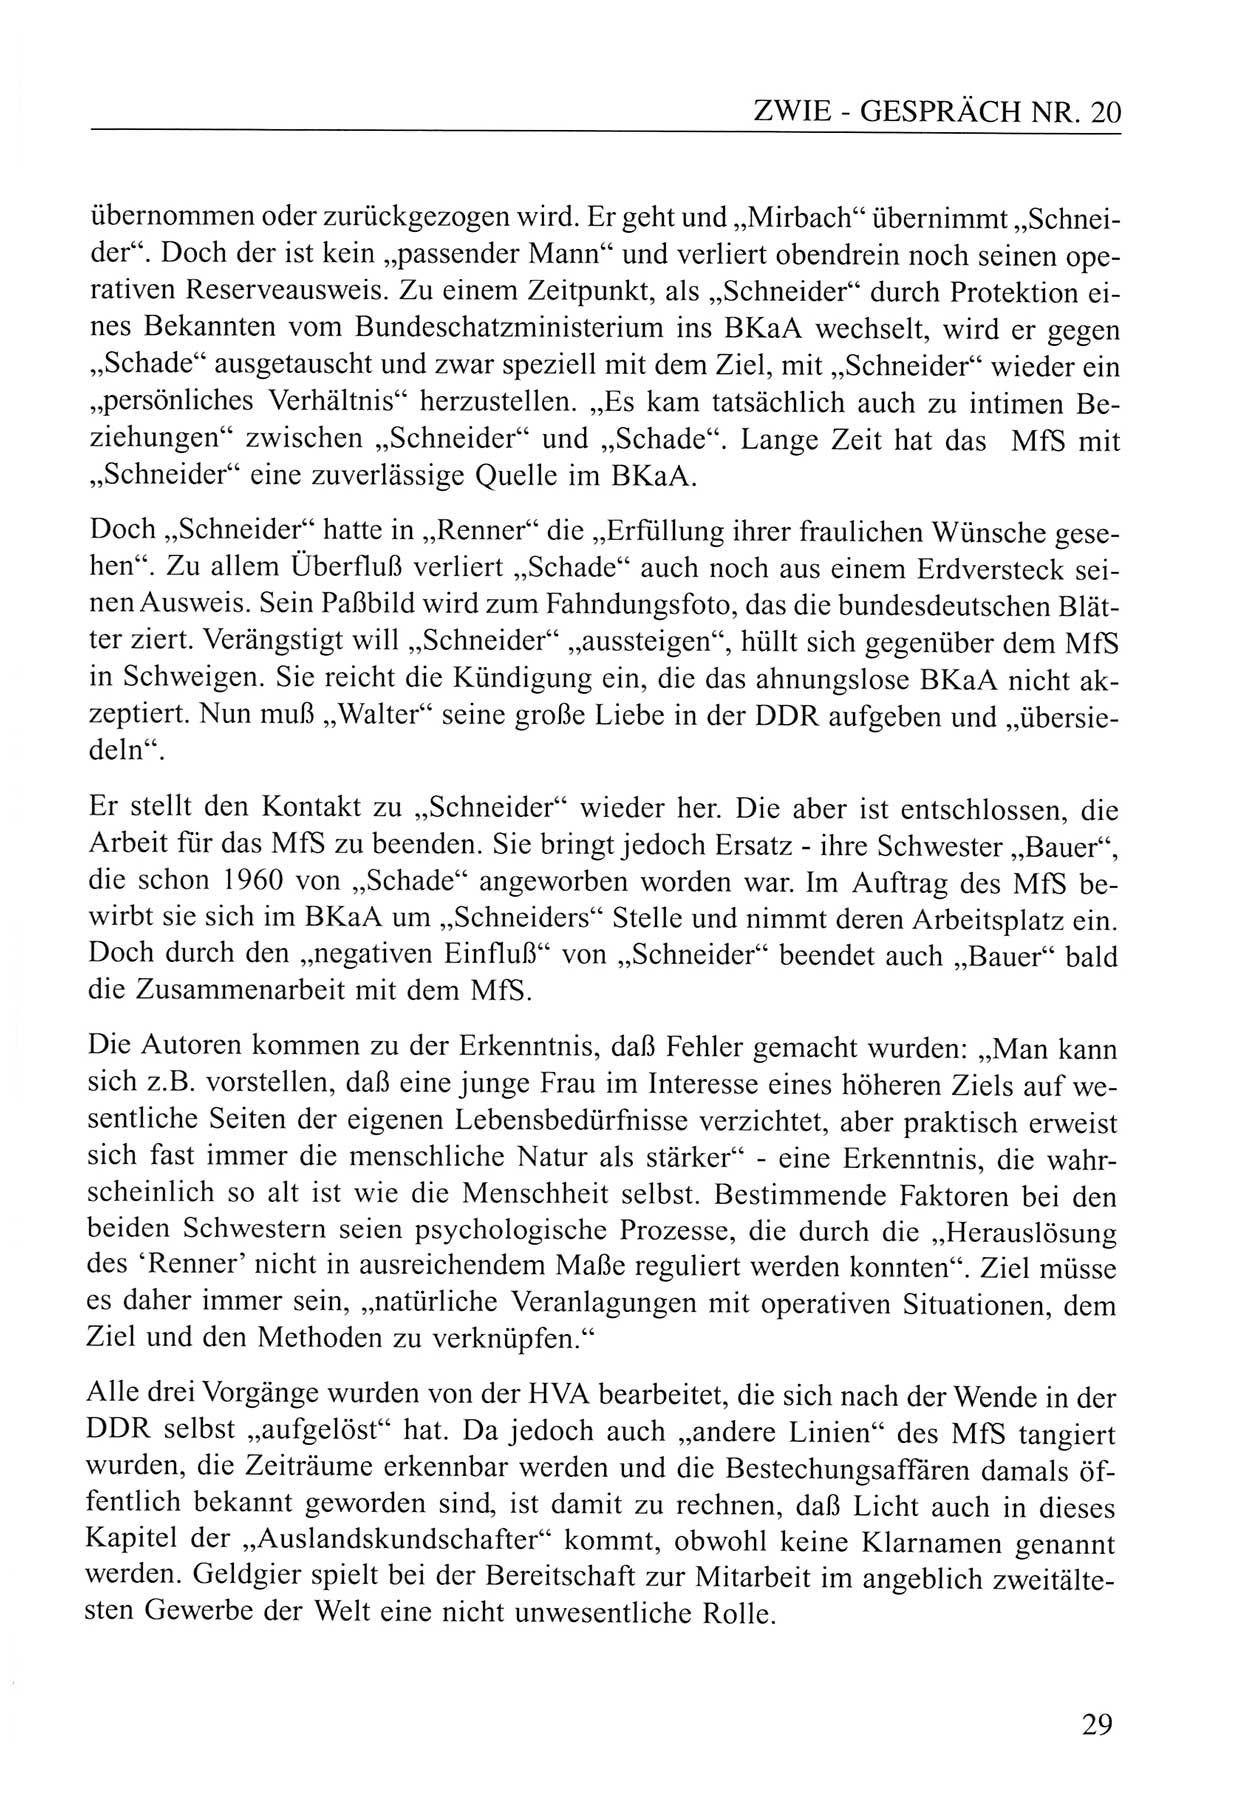 Zwie-Gespräch, Beiträge zum Umgang mit der Staatssicherheits-Vergangenheit [Deutsche Demokratische Republik (DDR)], Ausgabe Nr. 20, Berlin 1994, Seite 29 (Zwie-Gespr. Ausg. 20 1994, S. 29)